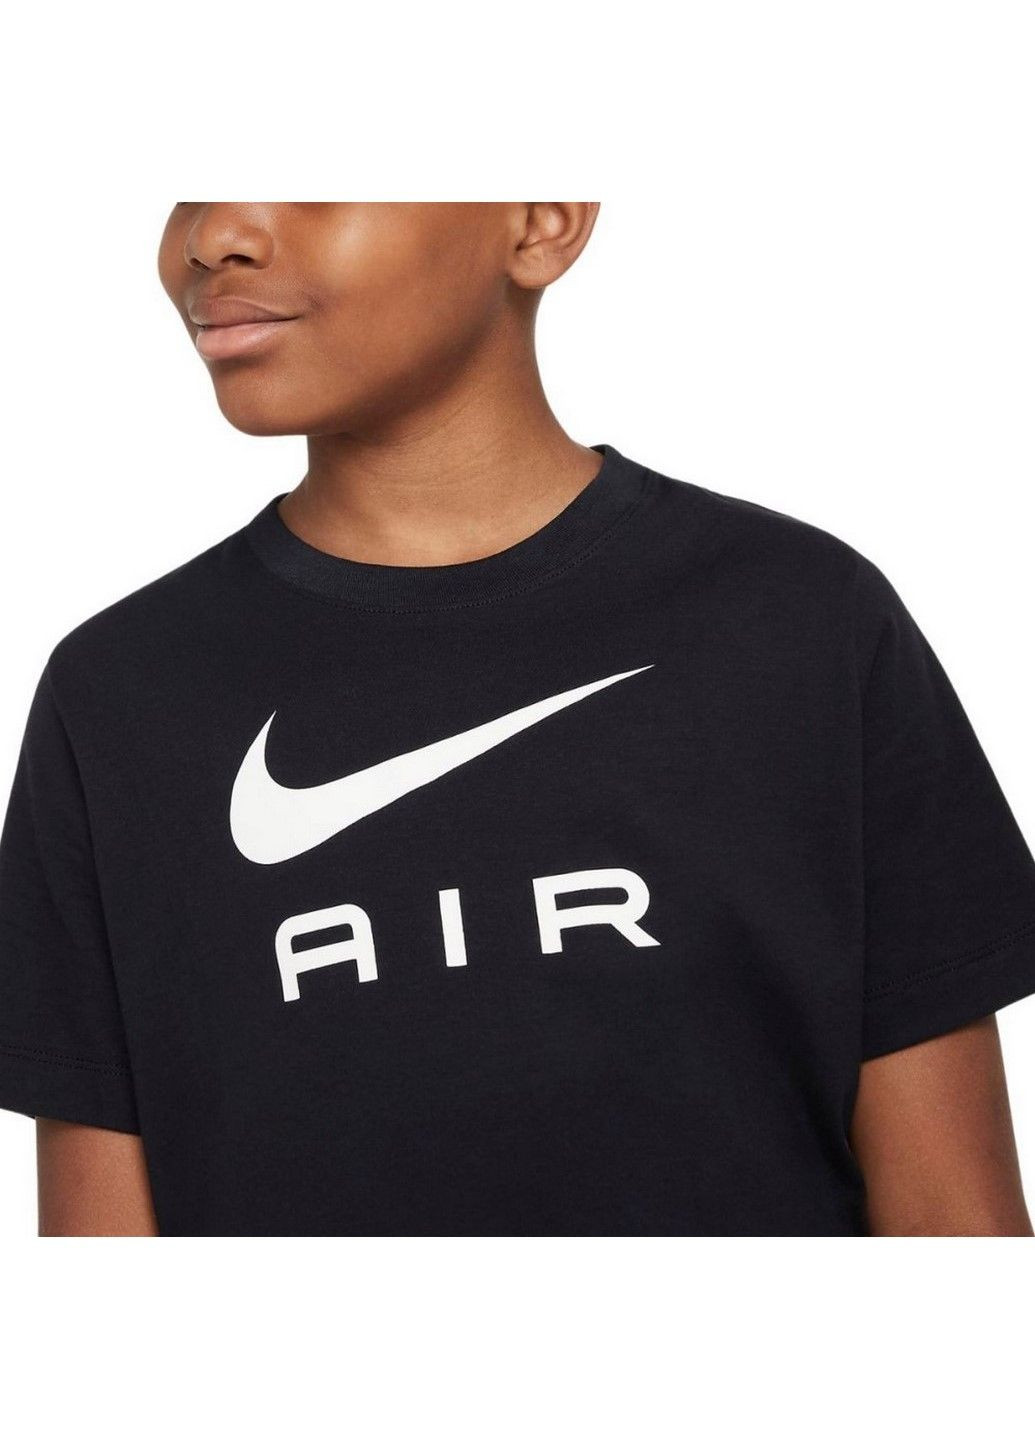 Чорна демісезонна футболка дитяча k nsw tee air dv3934-010 Nike